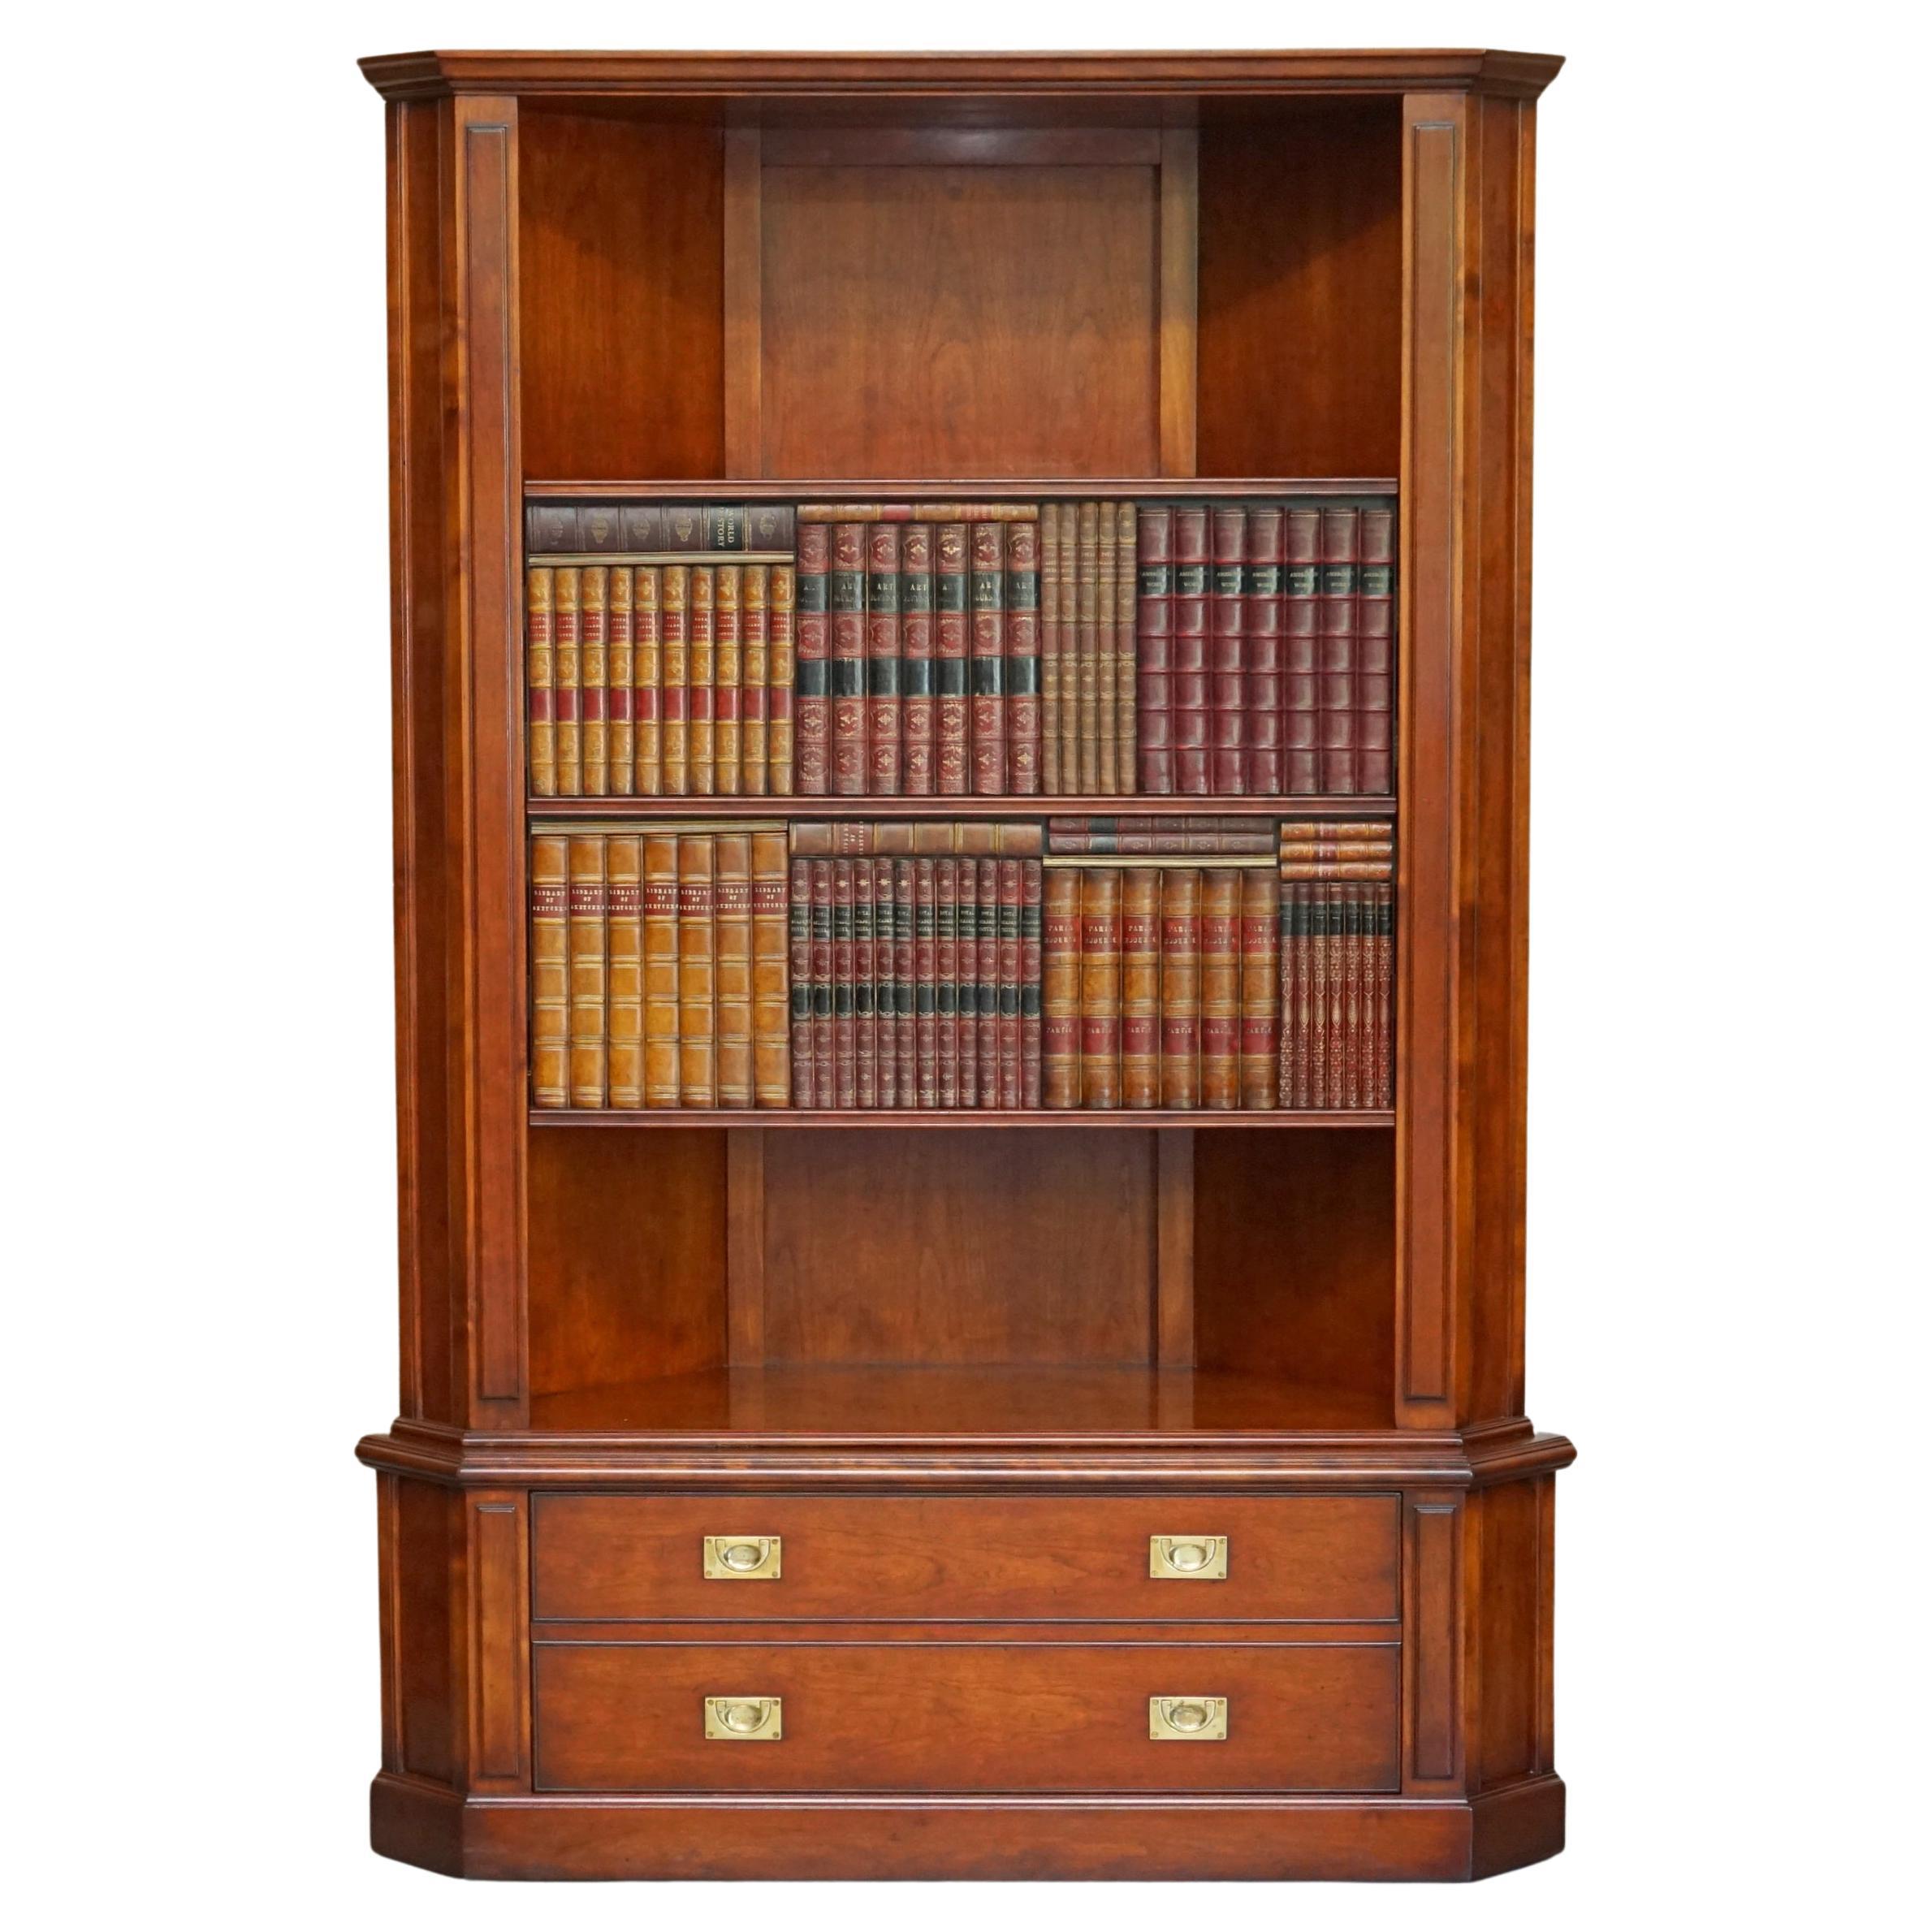 Harrods London Kennedy bibliothèque en bois de feuillus très rare meuble TV media cabinet de faux livres en vente